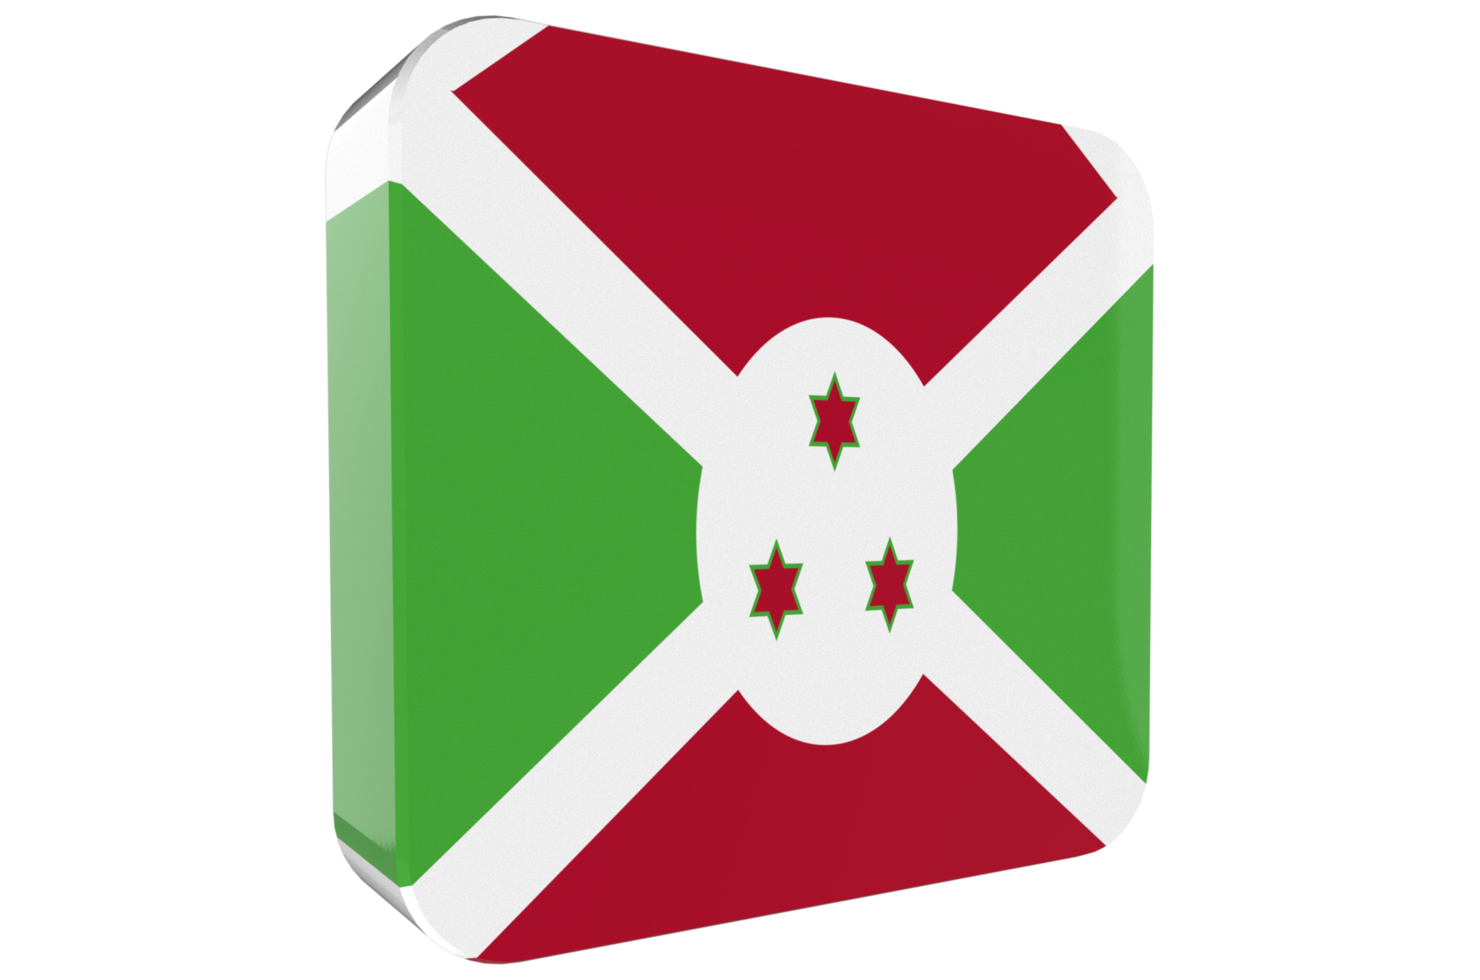 Burundi 3d Flag Icon on PNG Background